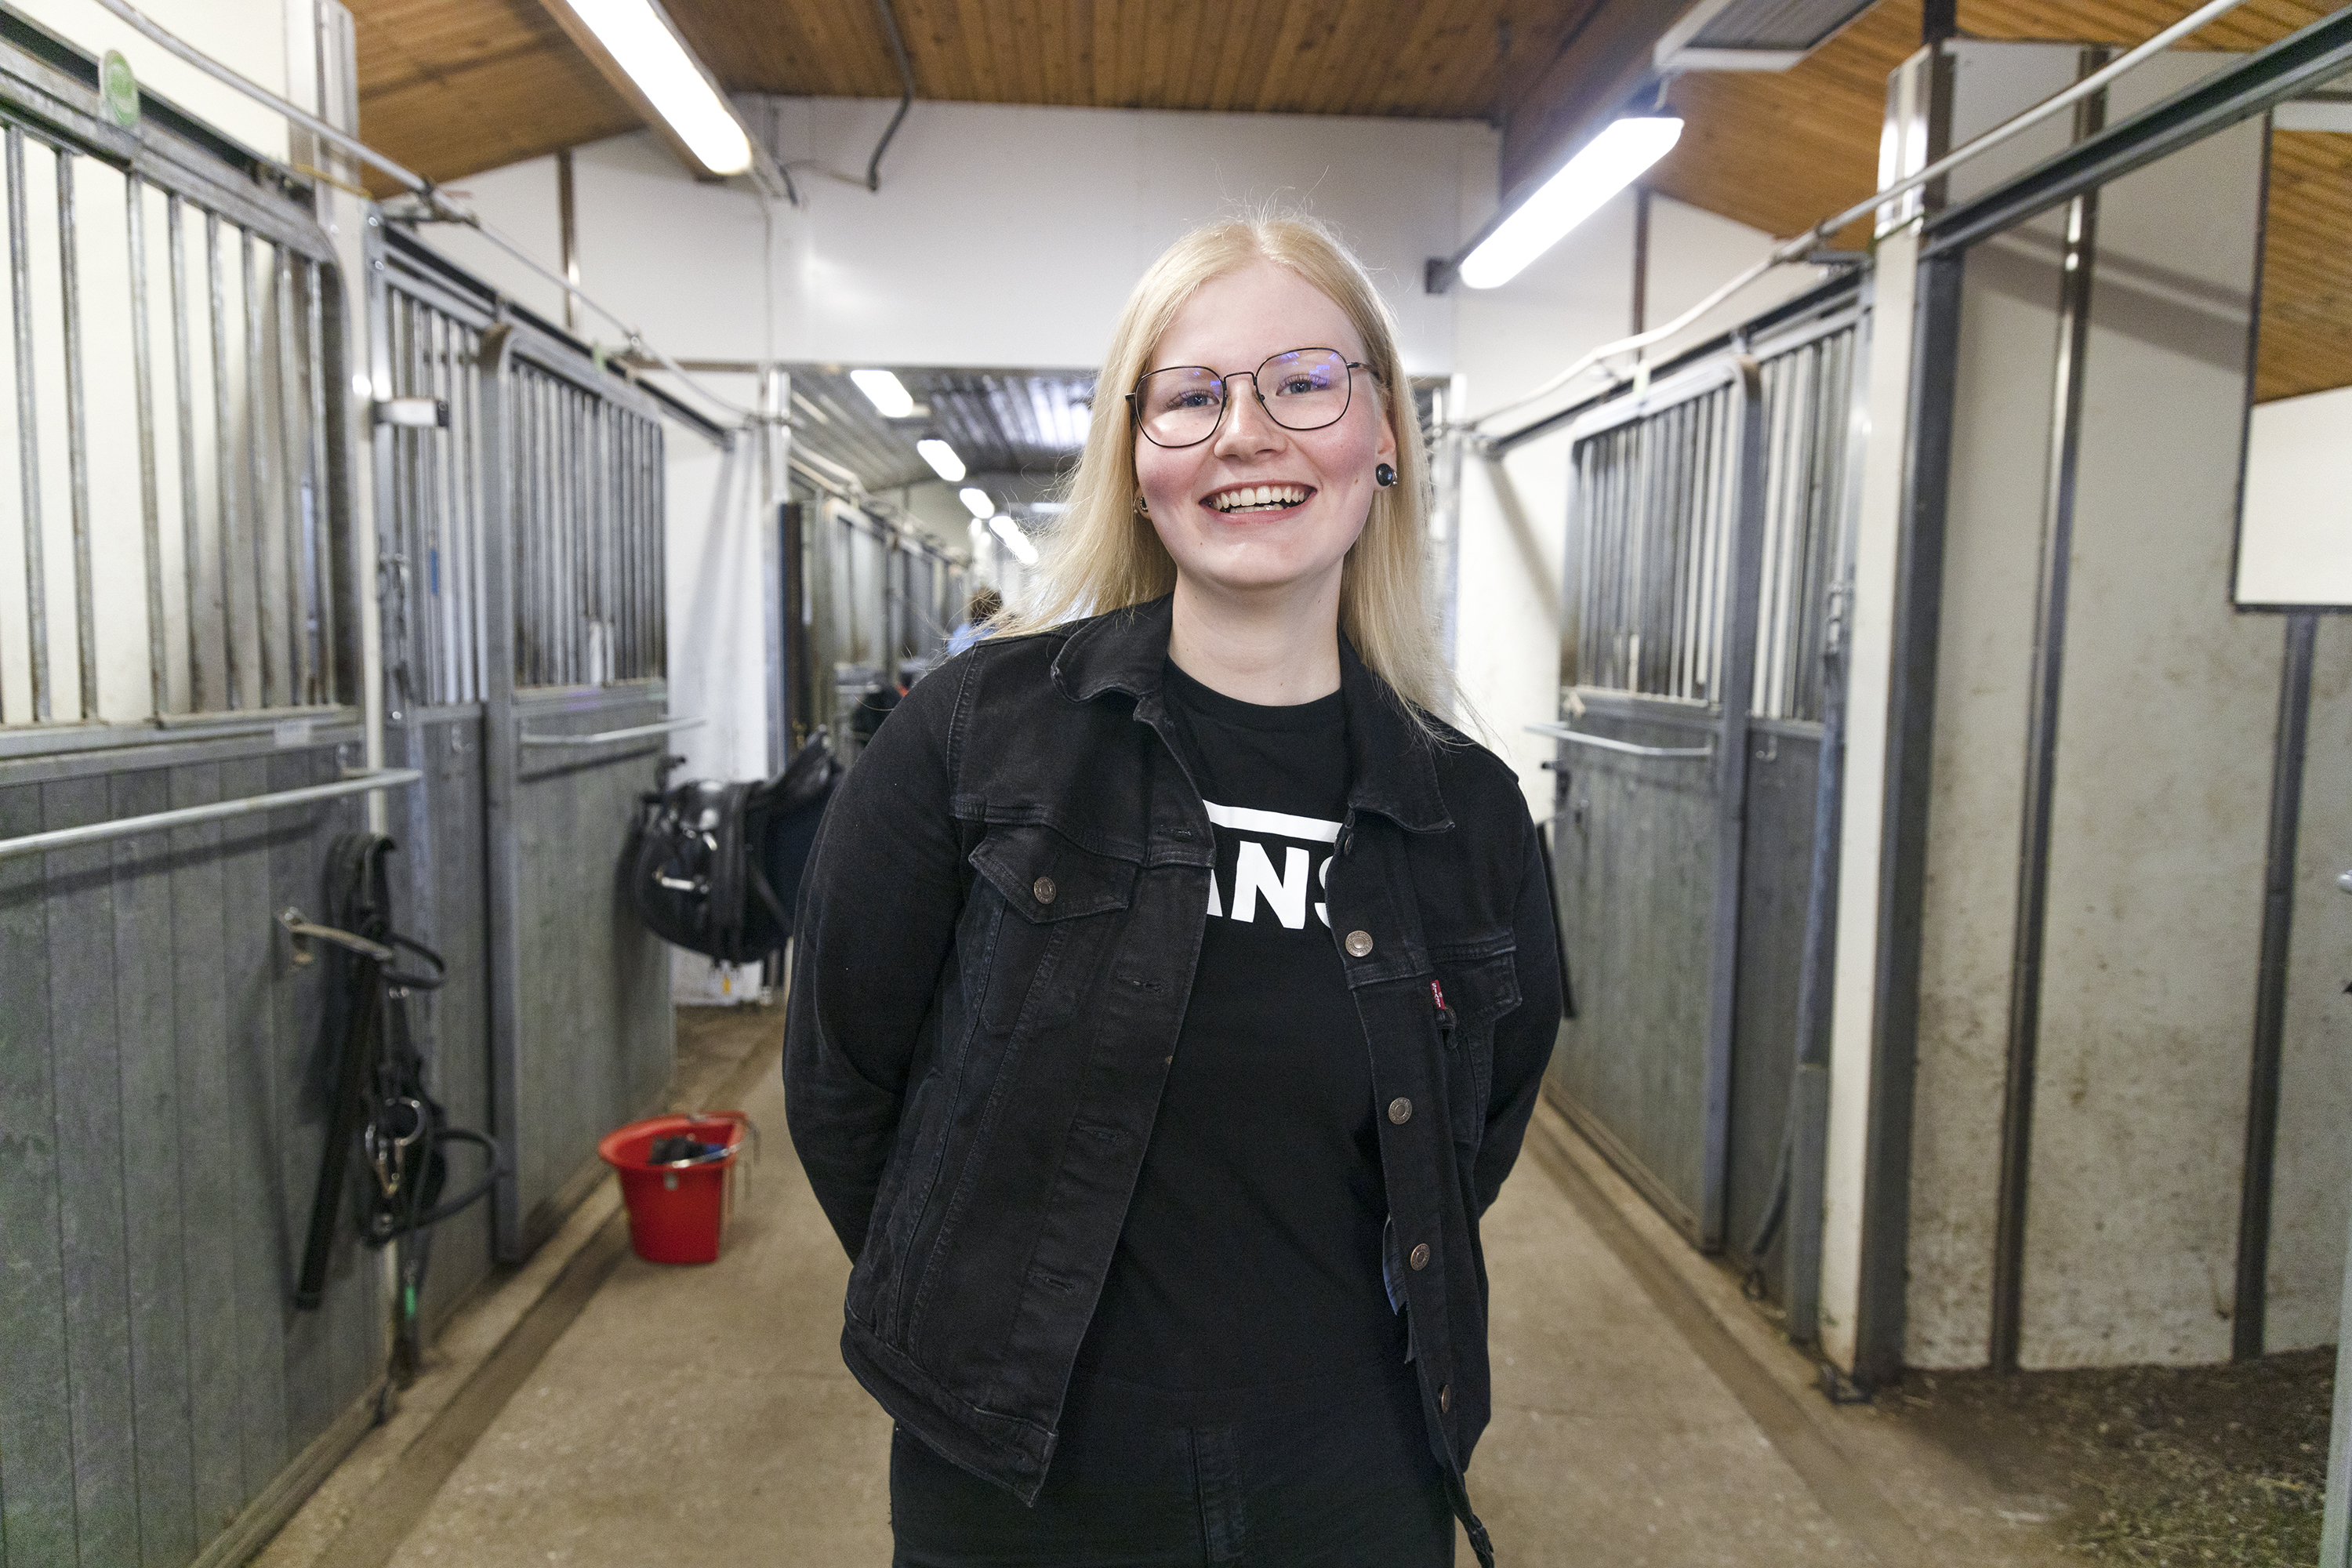 Kuvassa hevosalan opiskelija Heli Haapasalo poseeraa tallin käytävällä seisten.